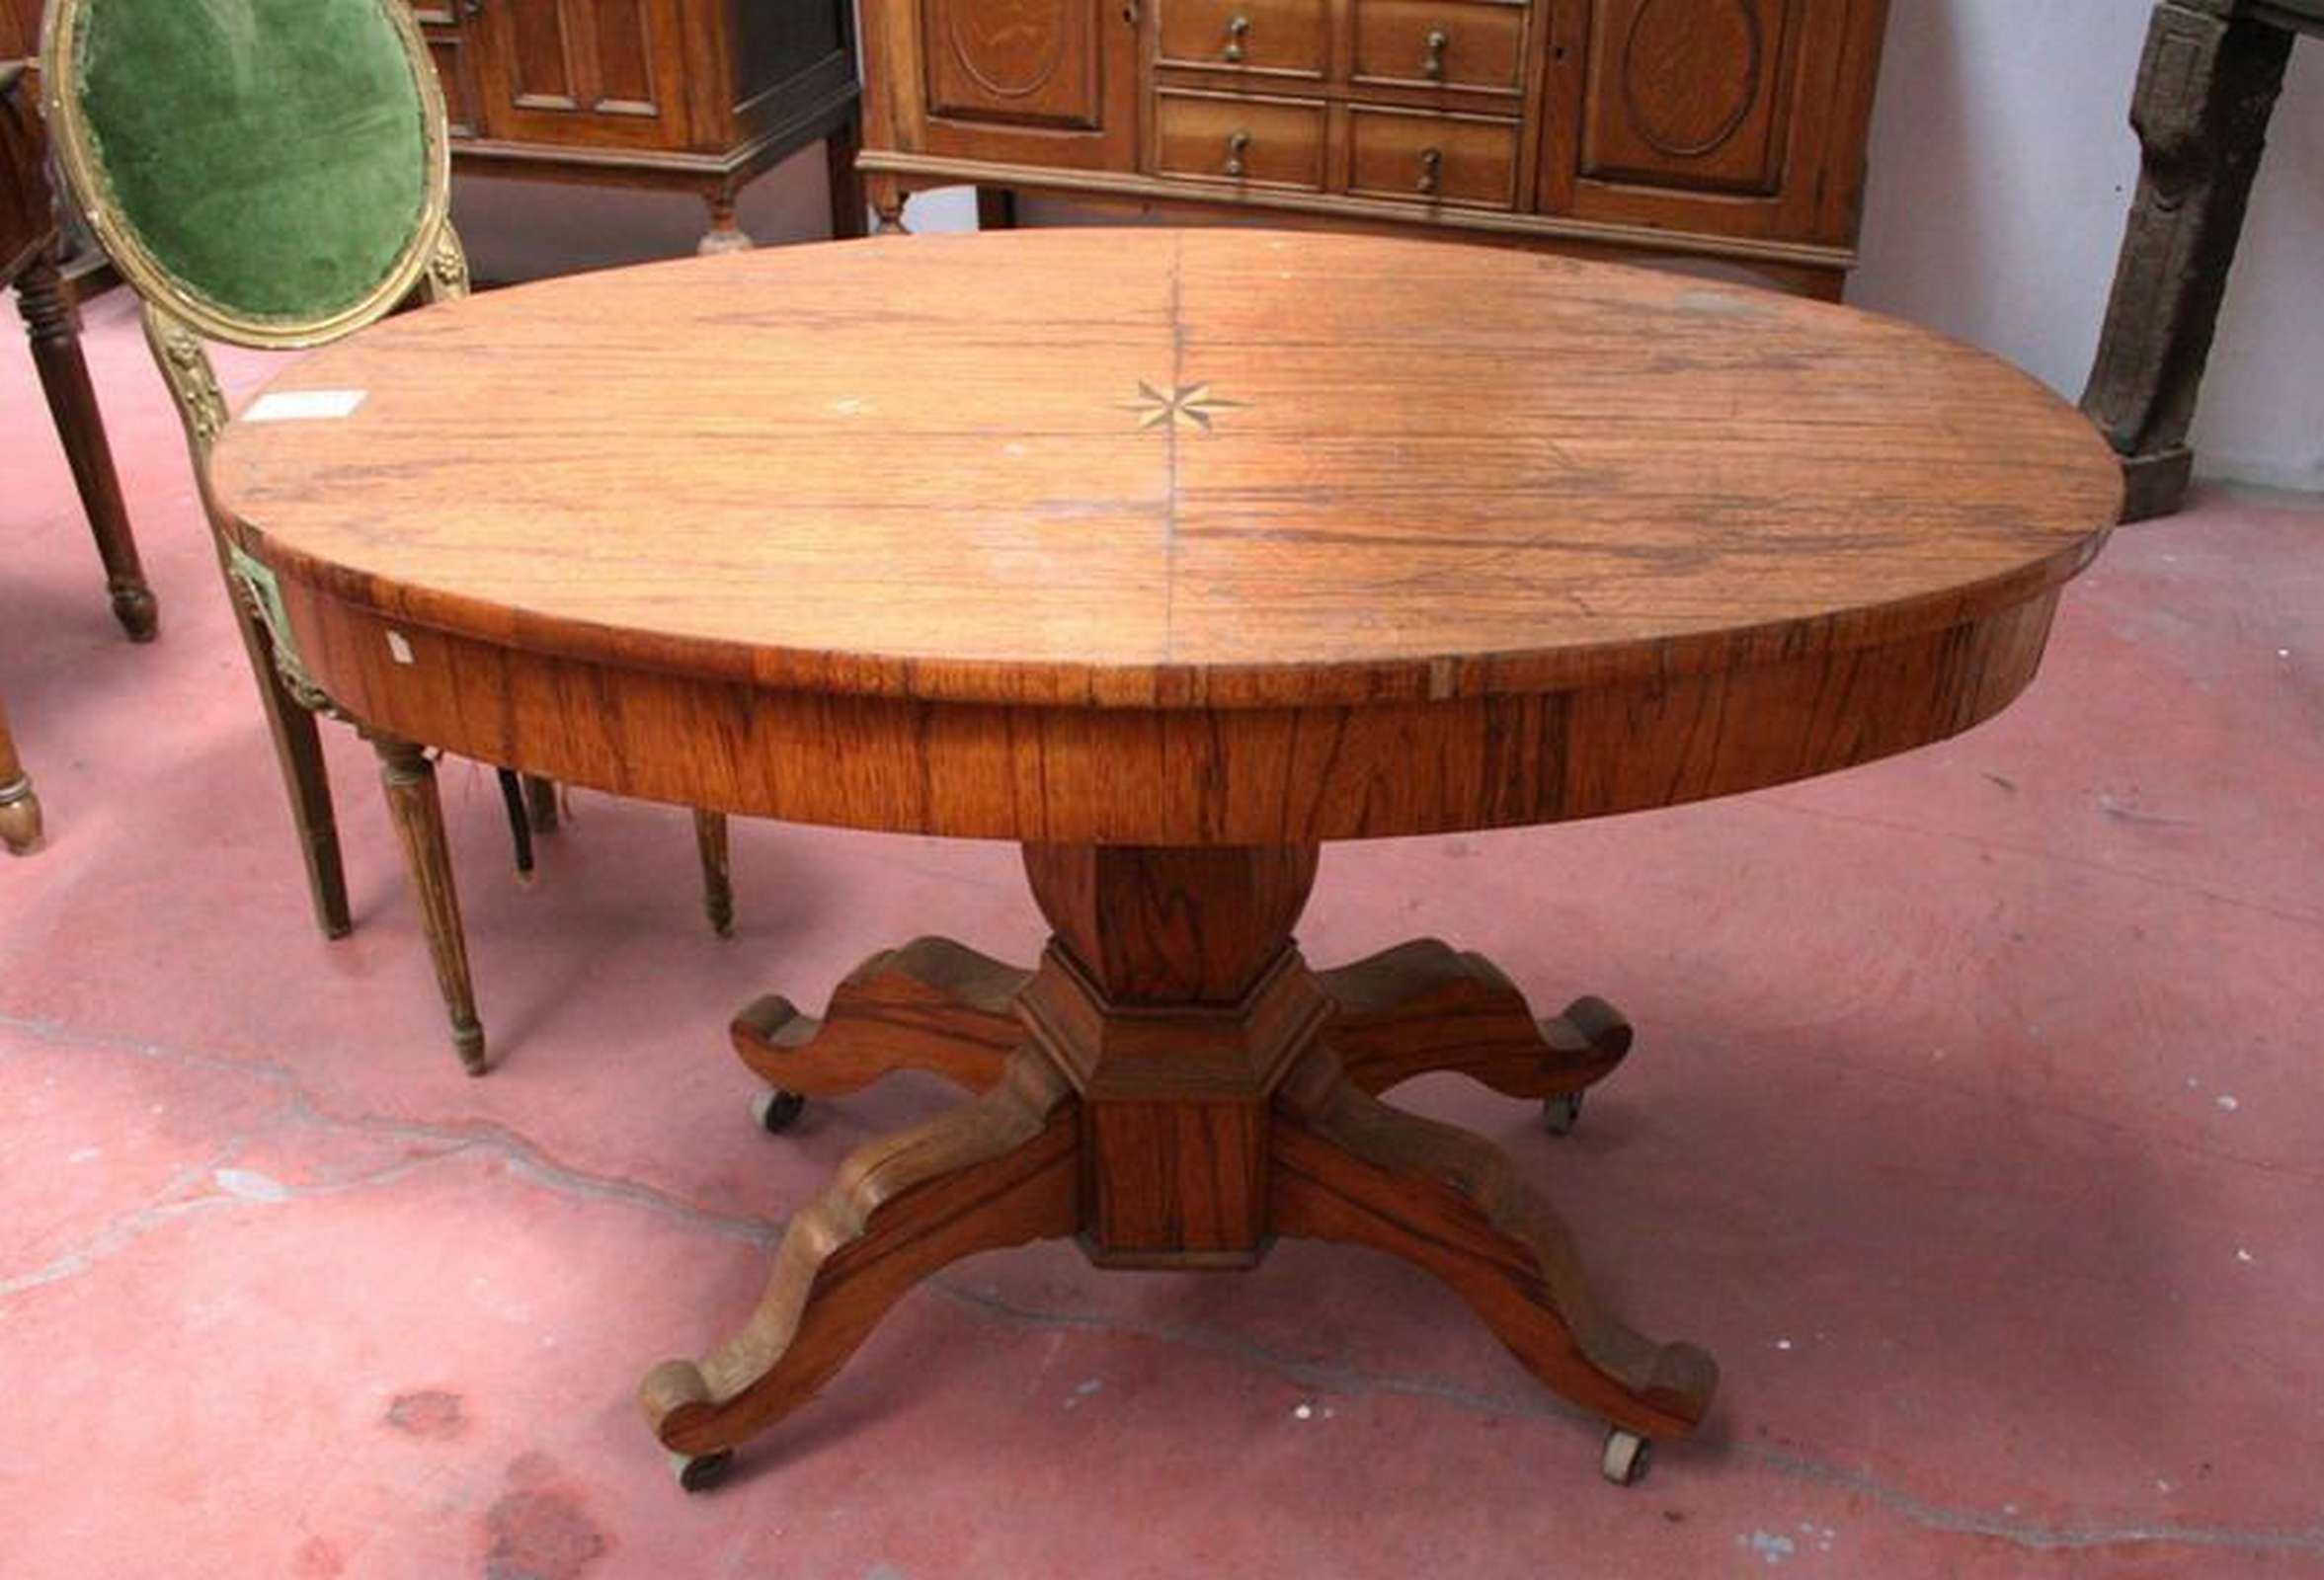 Tavolo in legno ovale - Tavoli Antichi - Mobili antichi - Prodotti - Antichità Fiorillo